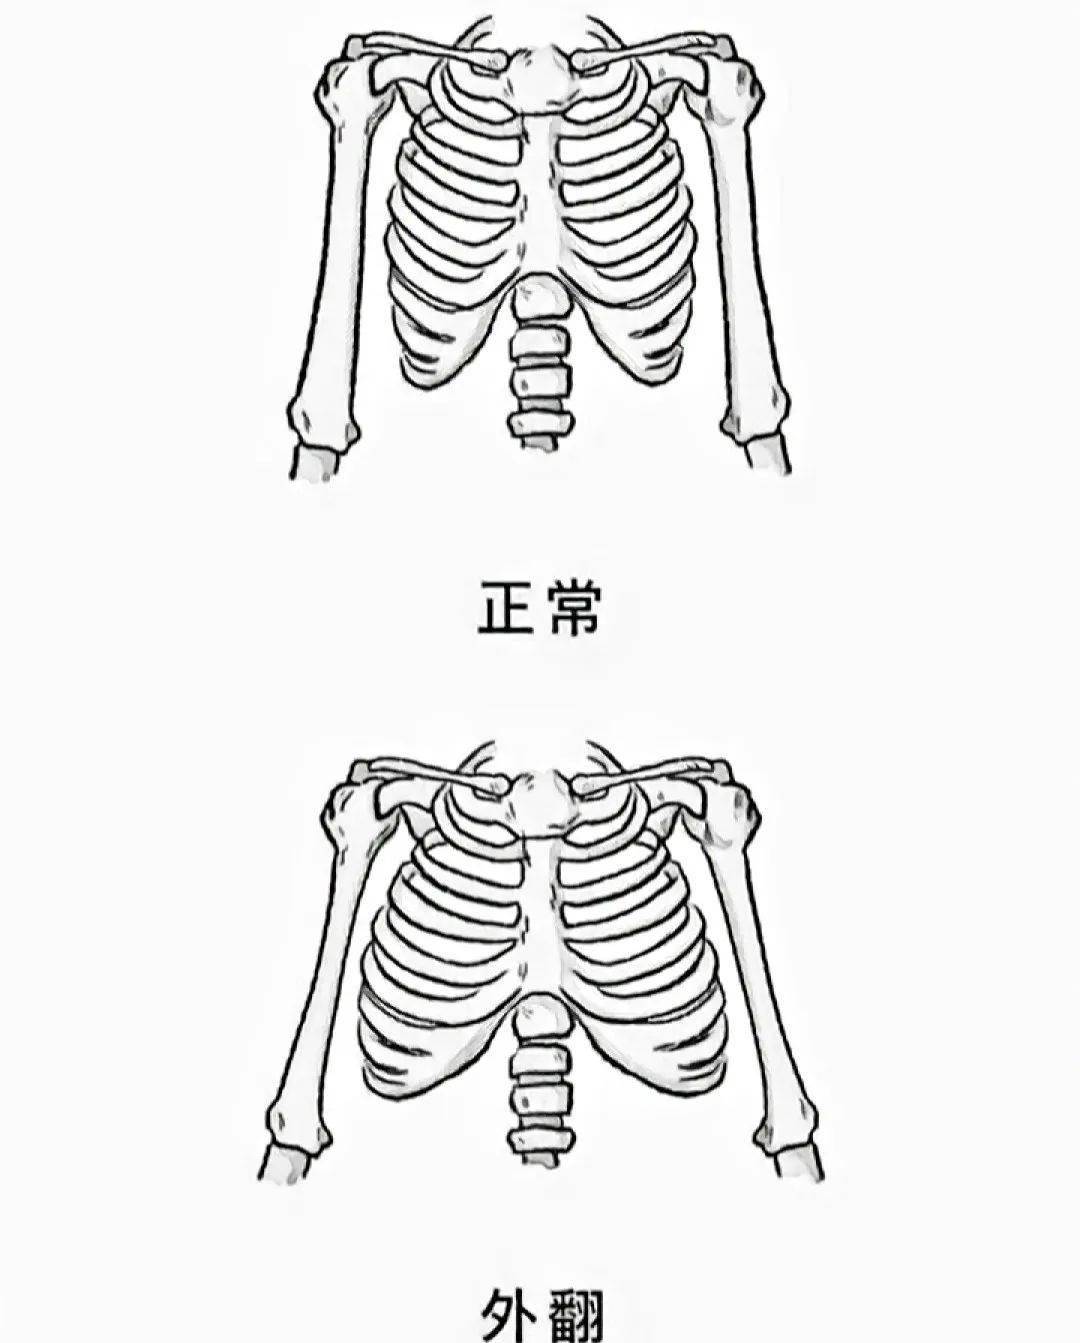 呼吸在胸廓上有三个维度的变化,第1至第6肋骨和胸骨上下运动,7至10肋